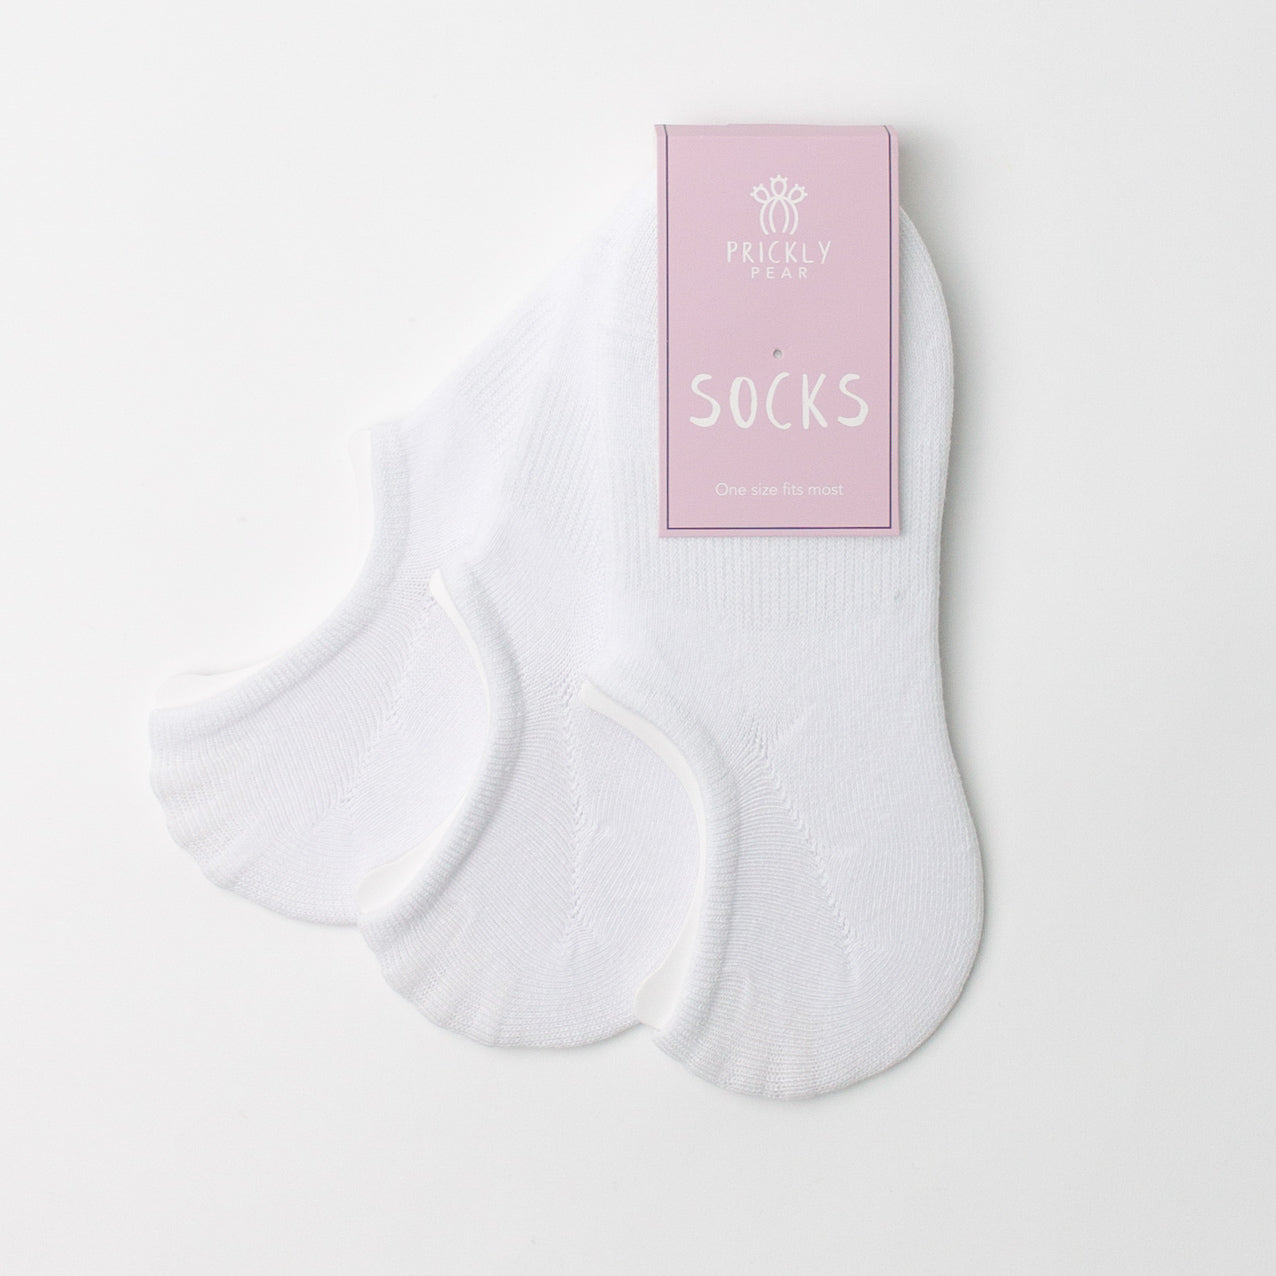 New - Socks